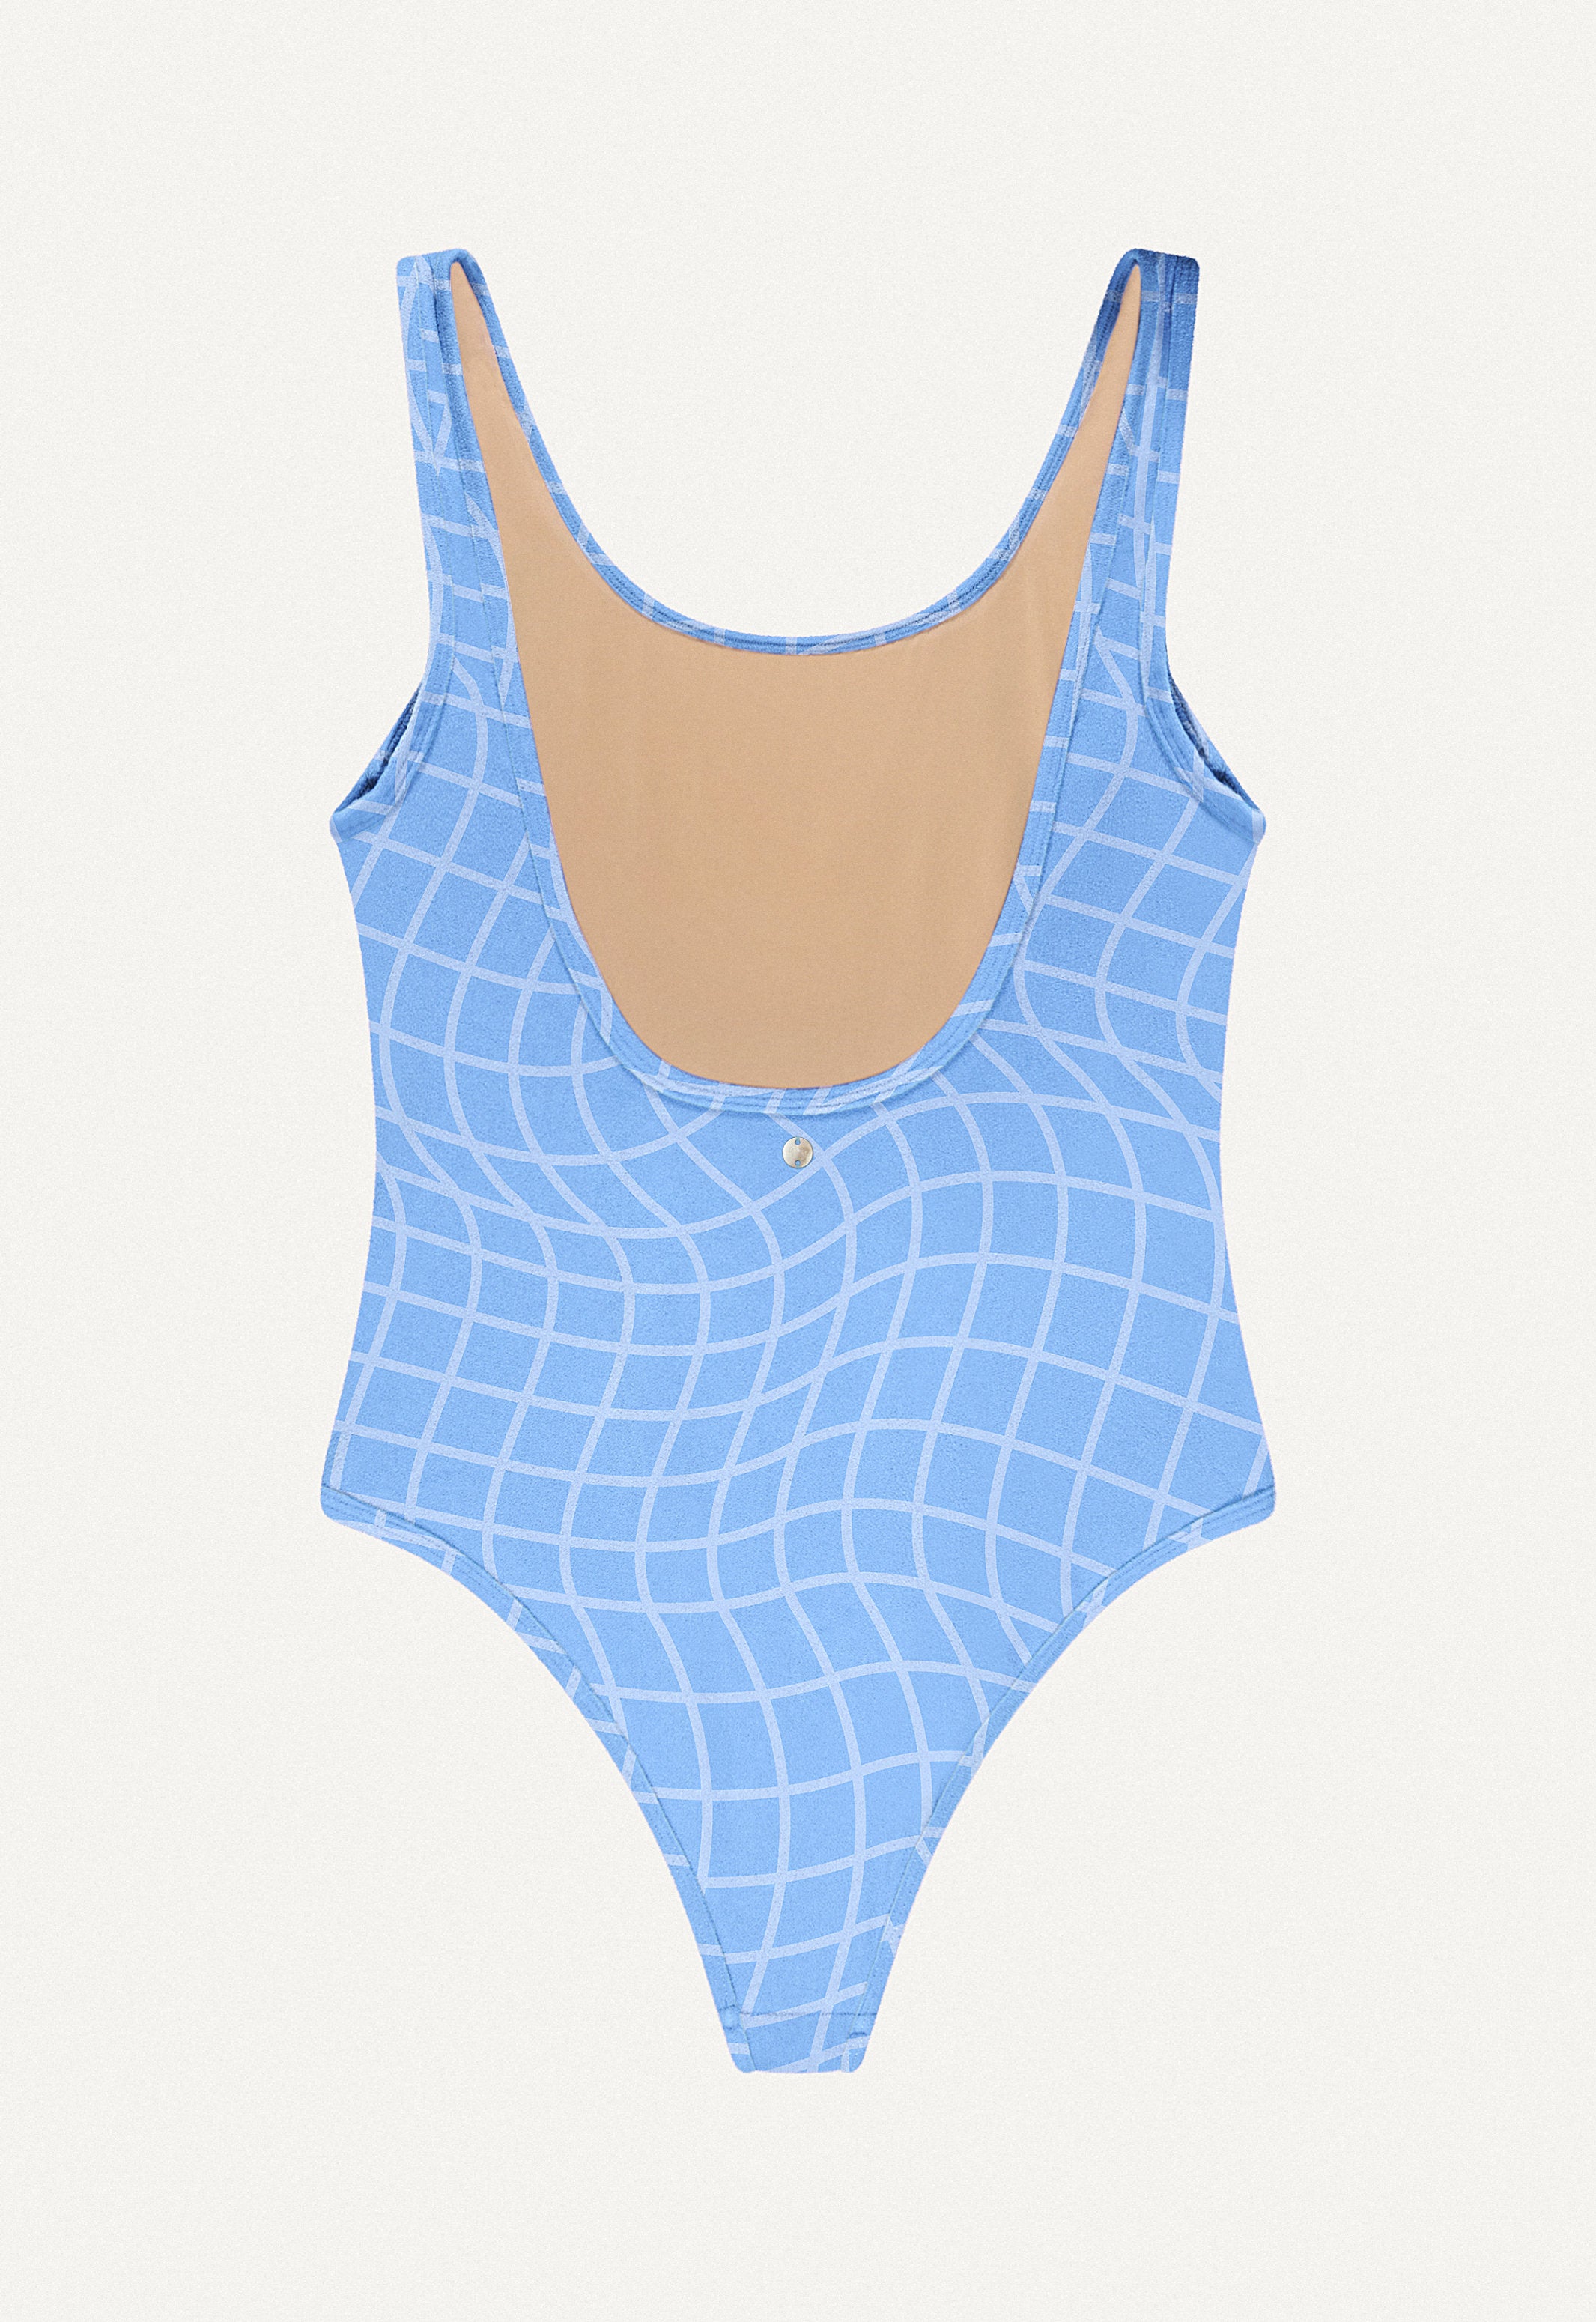 Badeanzug „Zephyr“ in Blue Pool Print Frottee